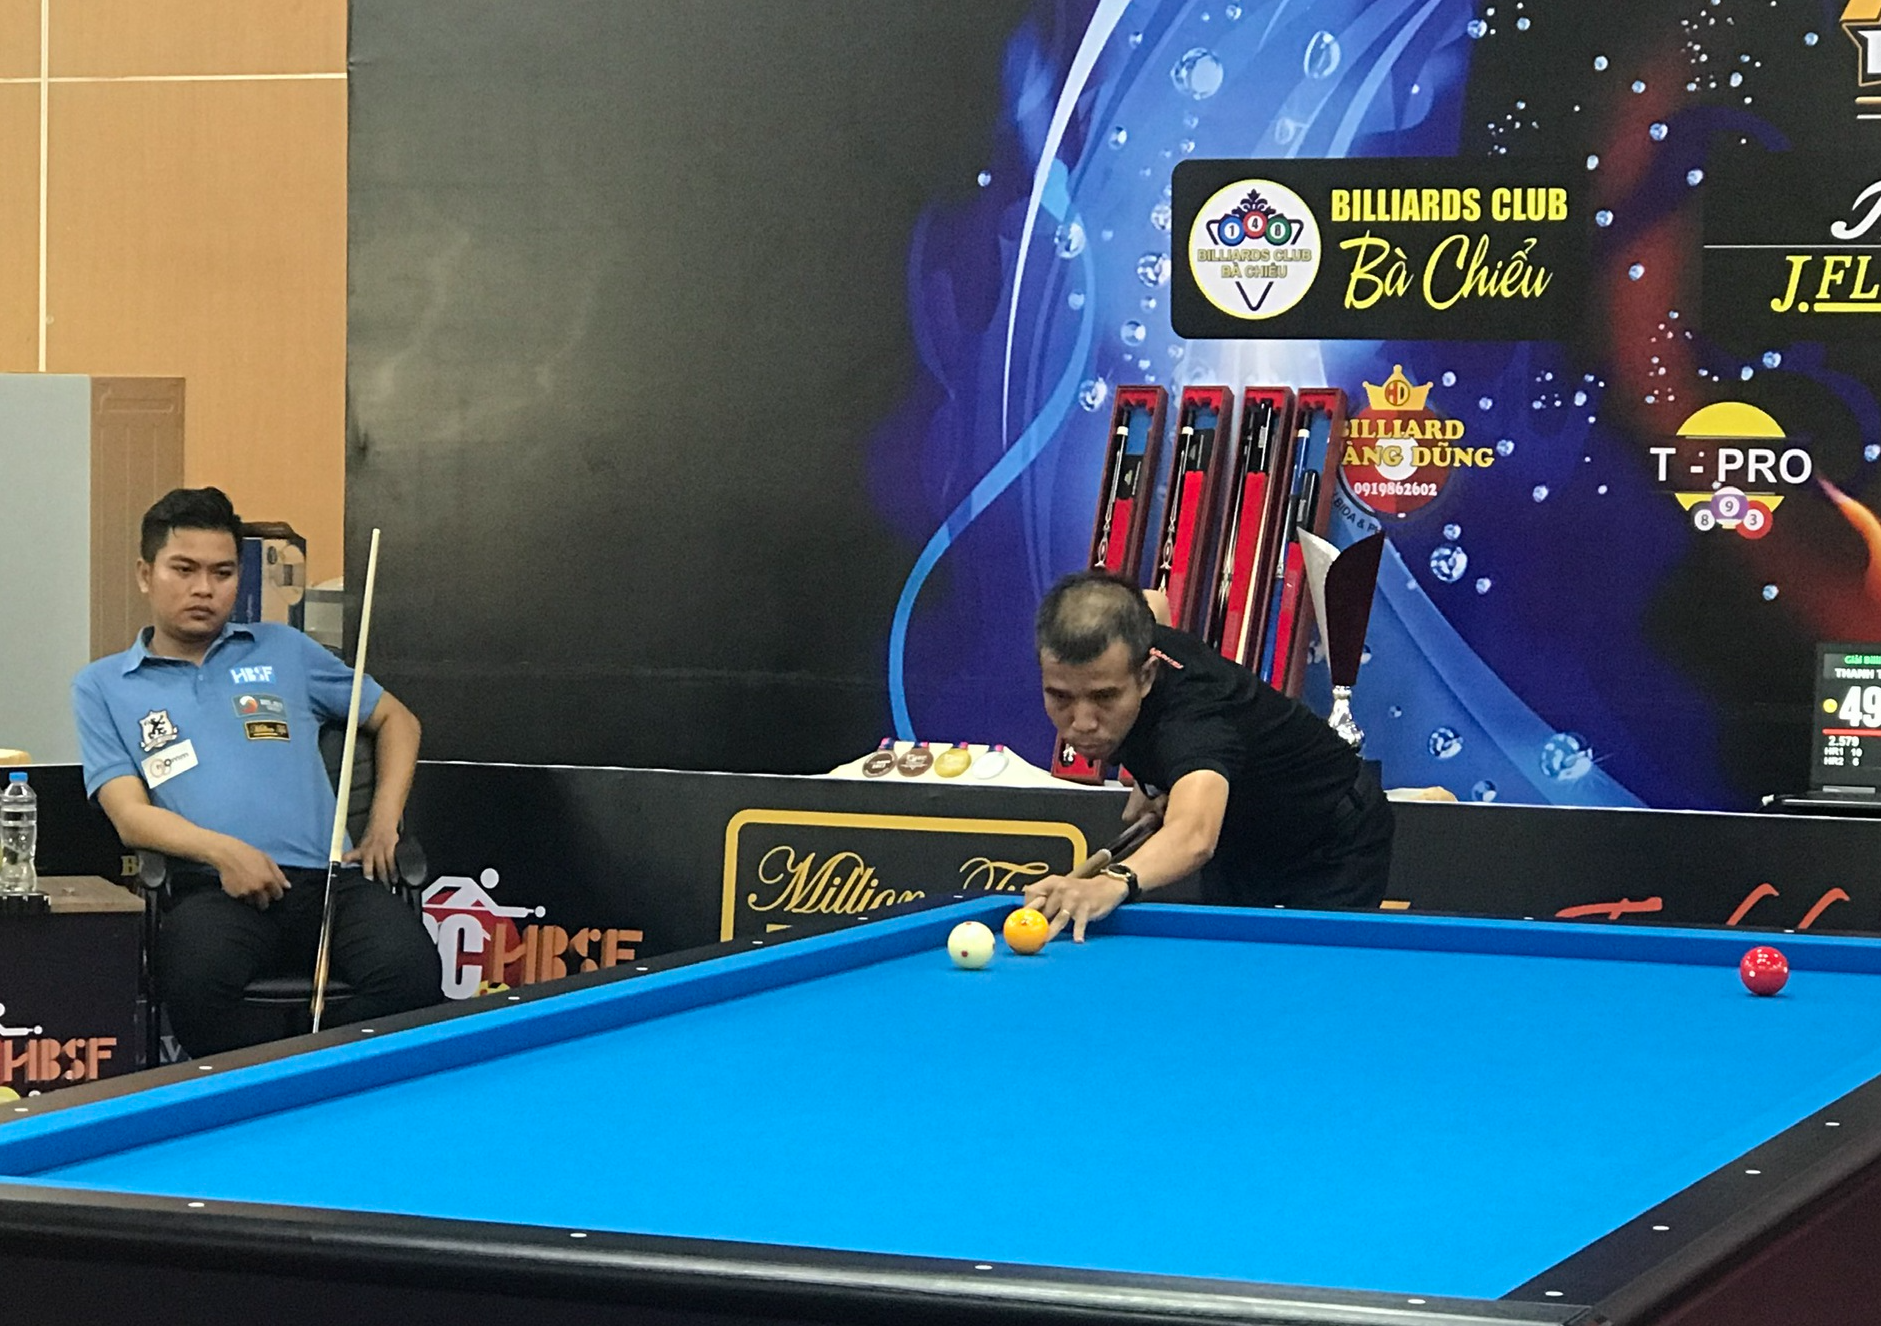 Nhà vô địch billiards World Cup thất bại ở chung kết giải thành phố - Ảnh 1.